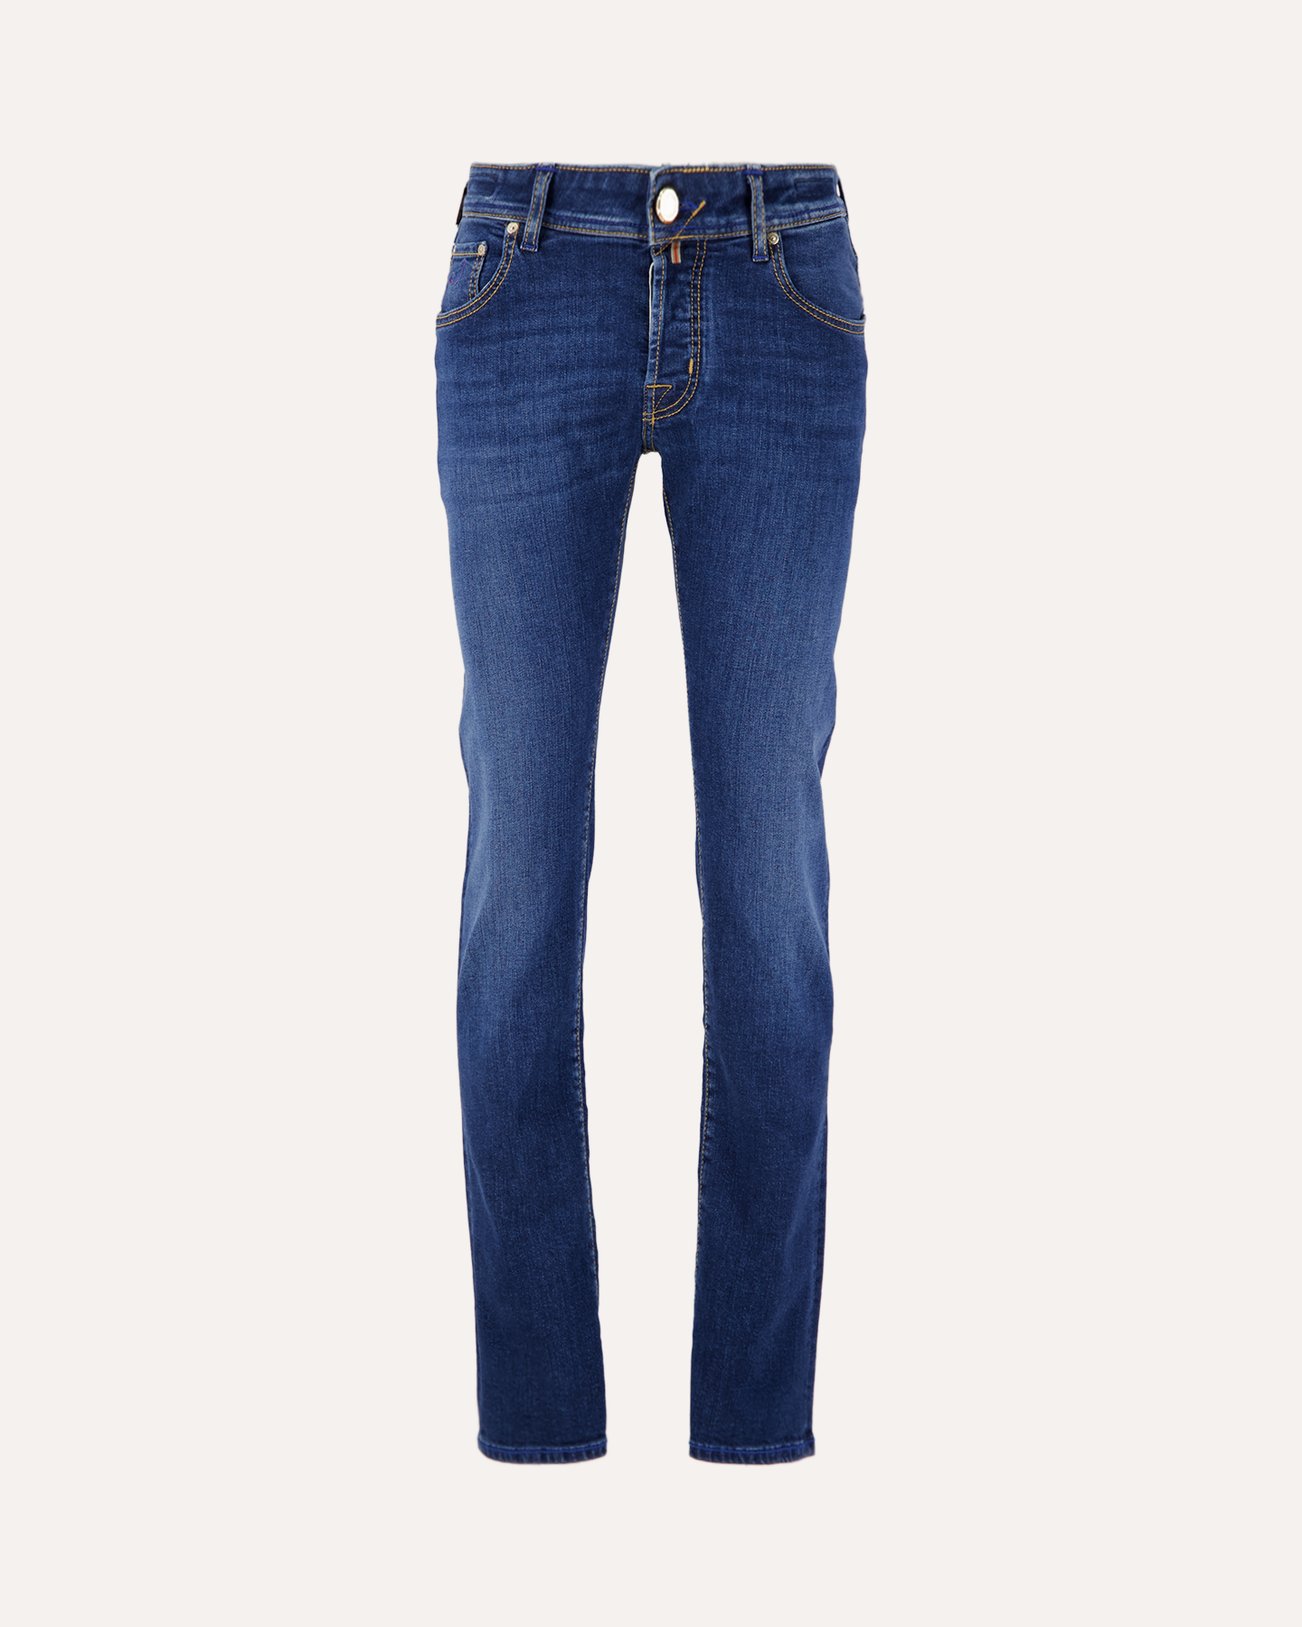 Jacob Cohen Nick Mid-Blue Selvedge Limited-Edition Jeans 778D DENIM 1